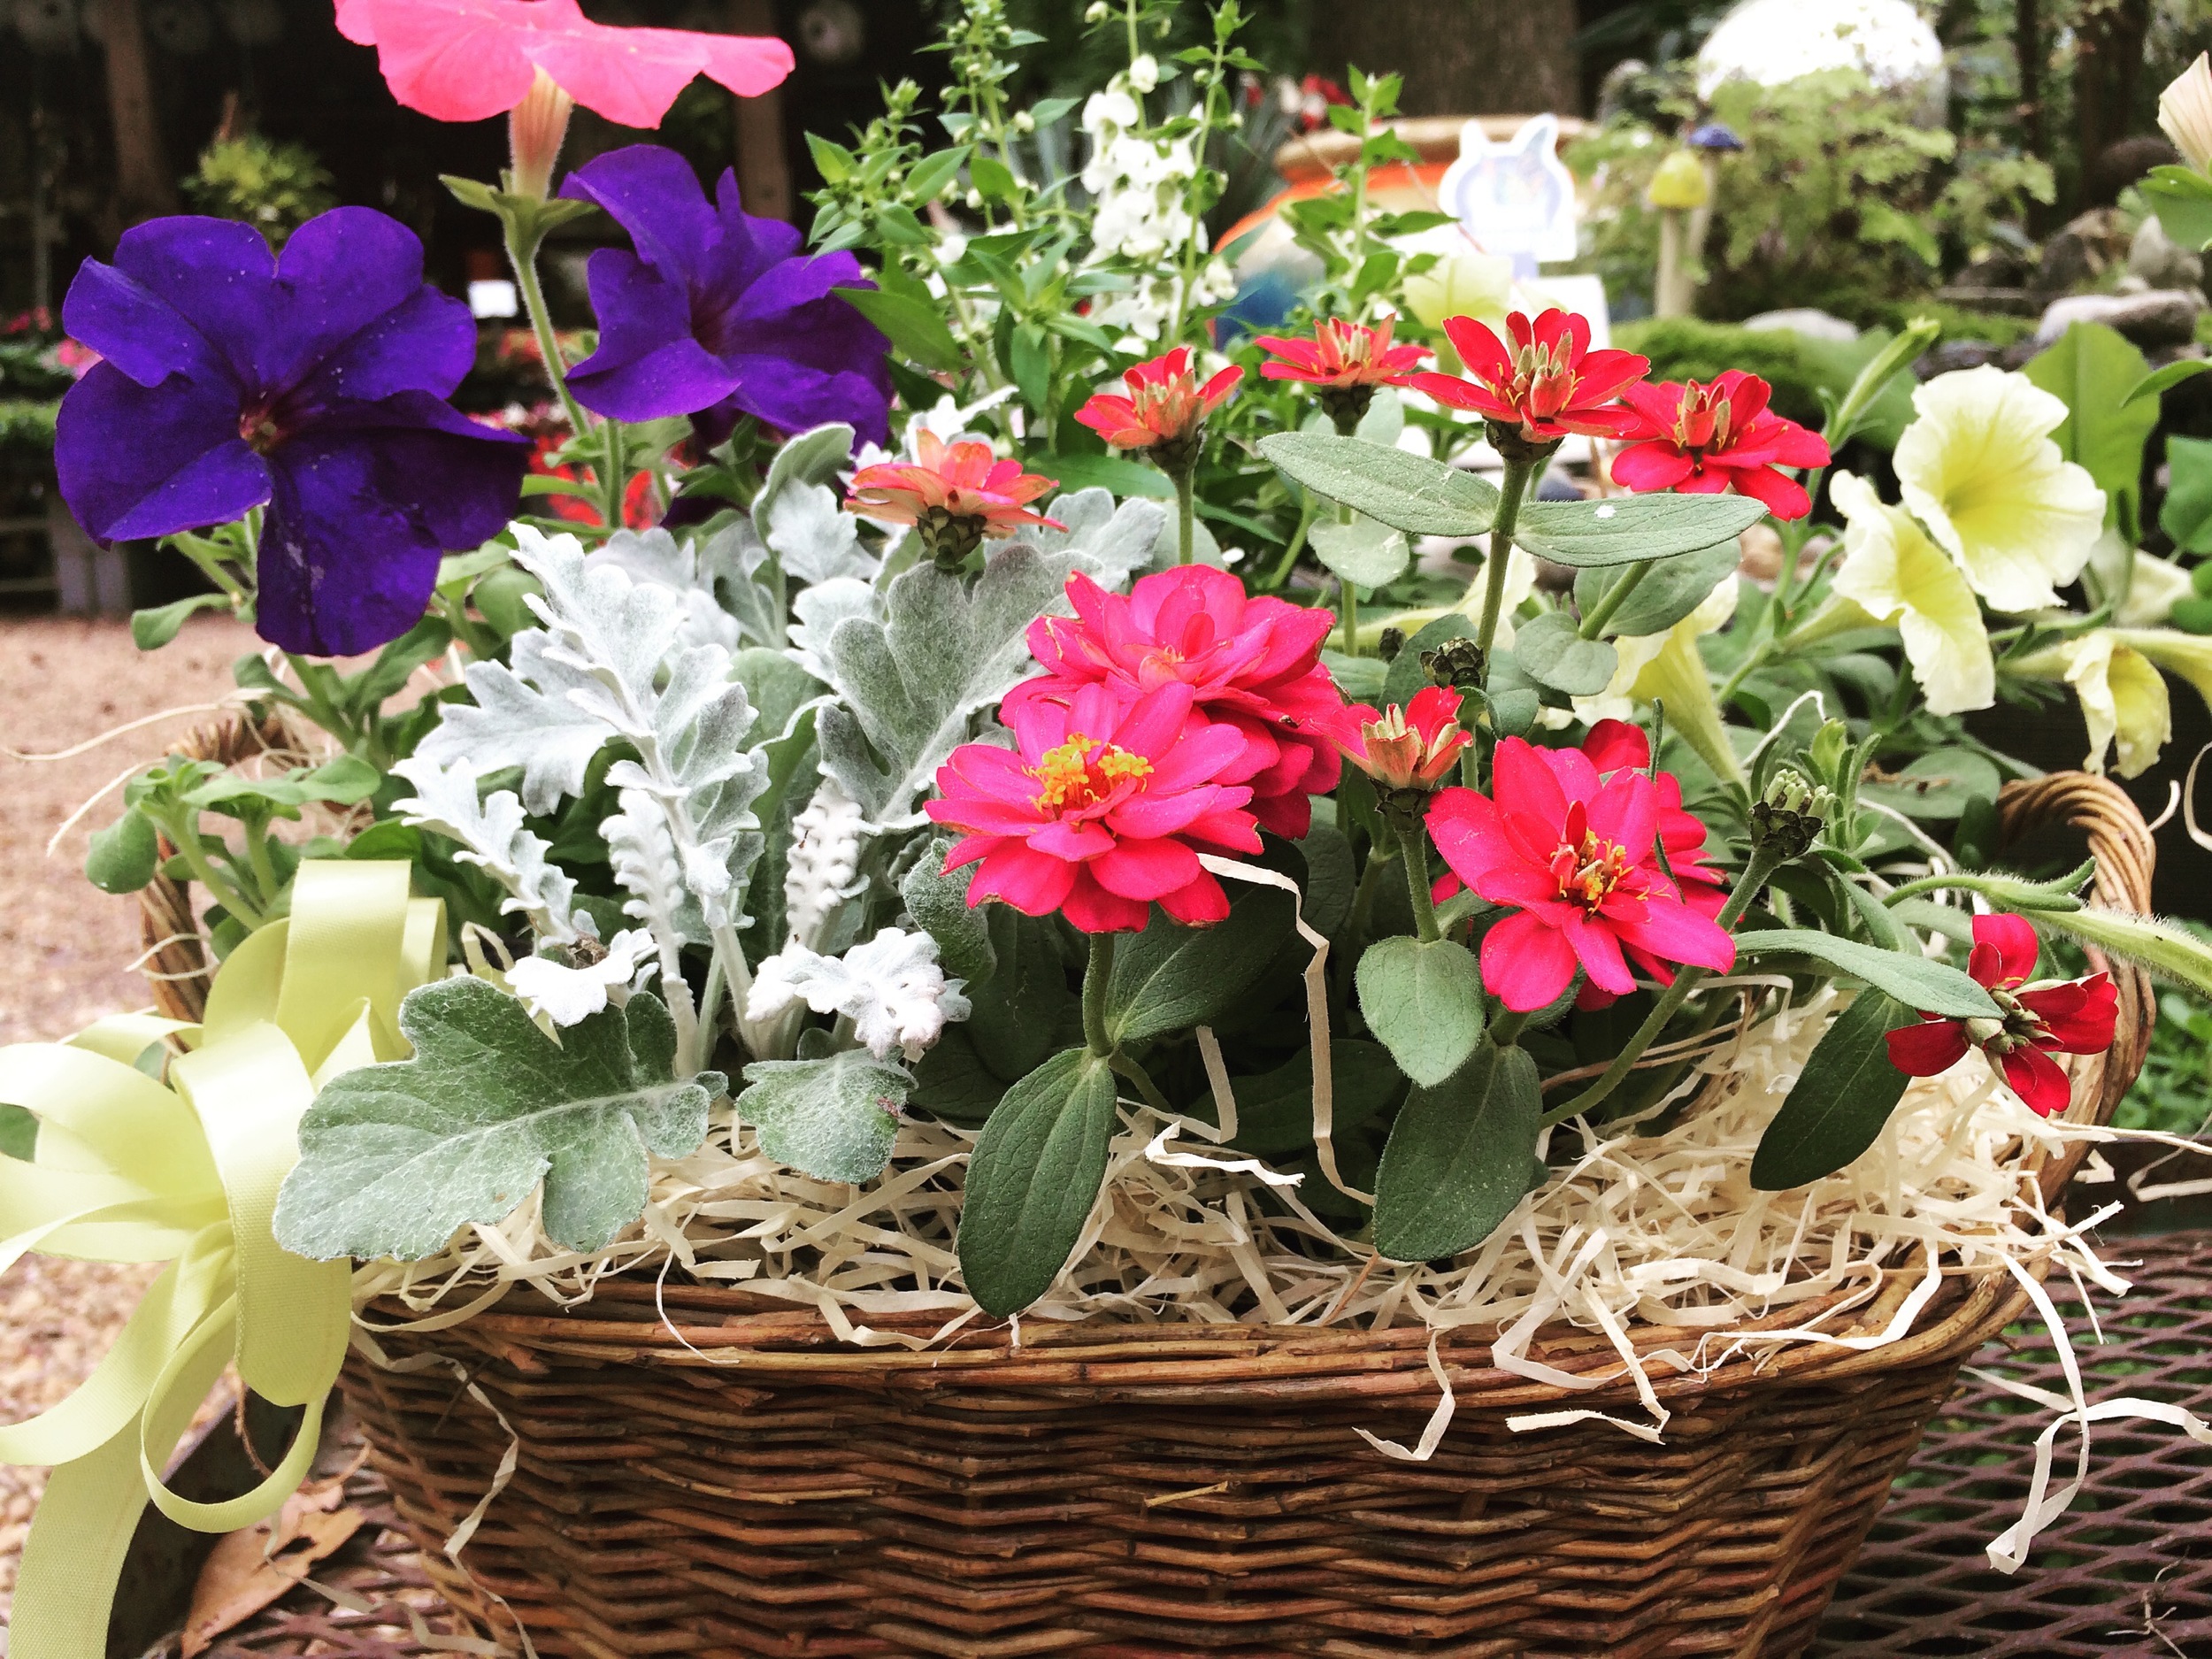 Flower & Herb Baskets